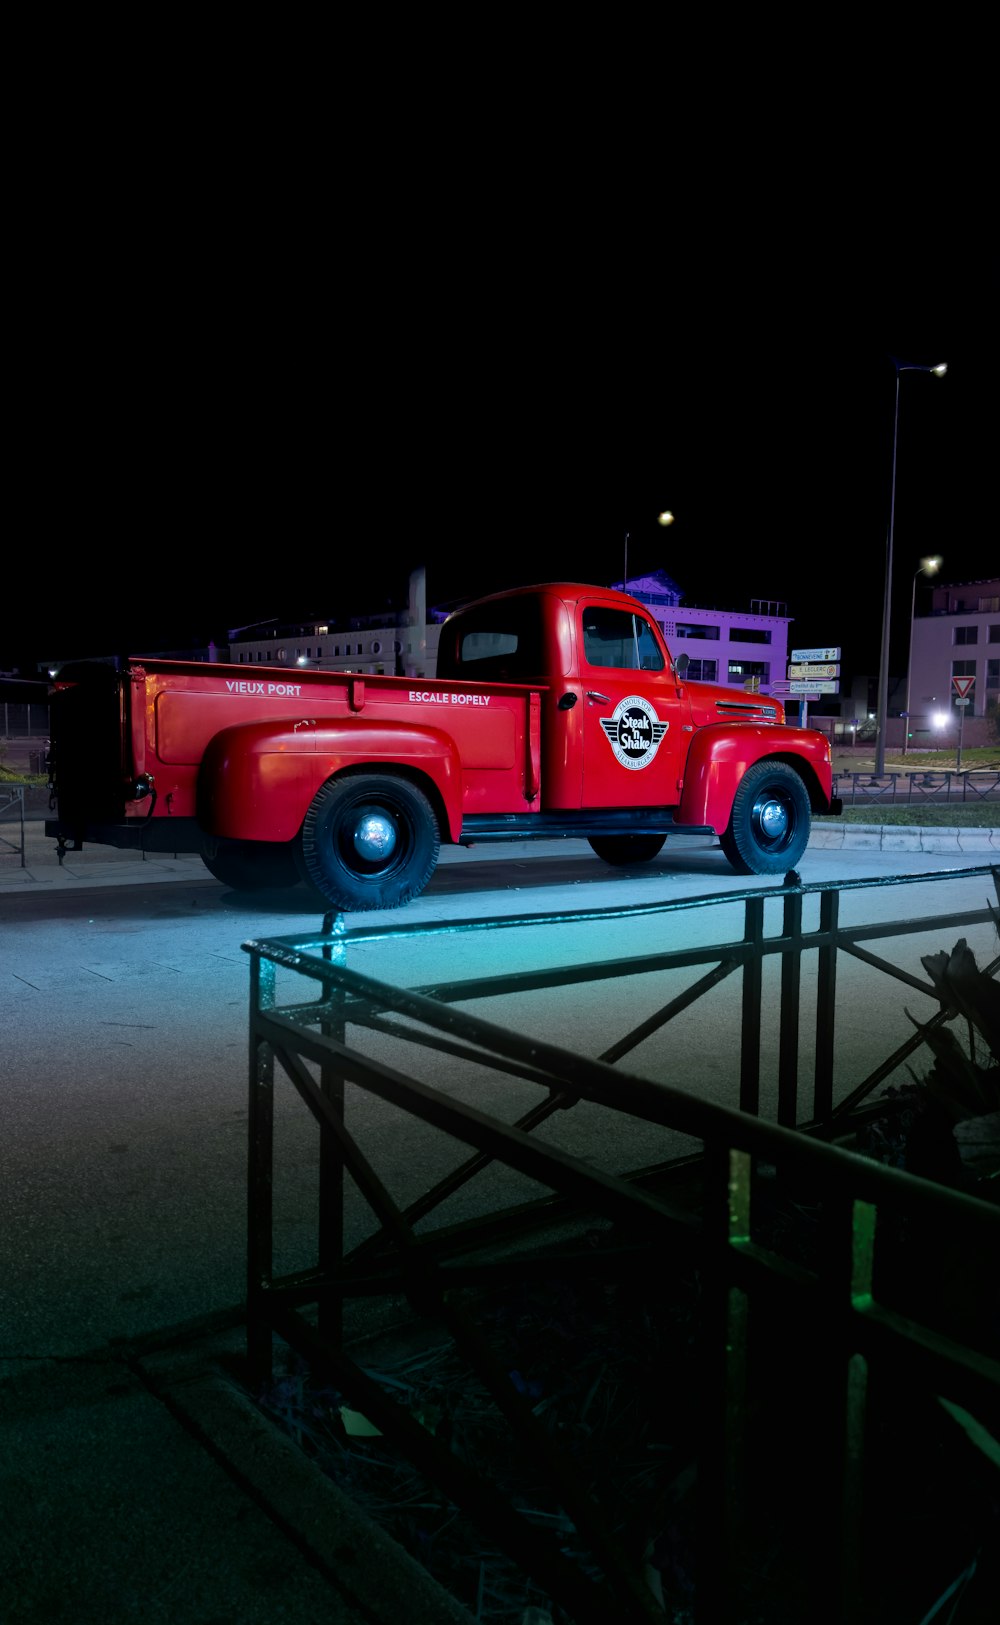 un camion rosso parcheggiato in un parcheggio di notte